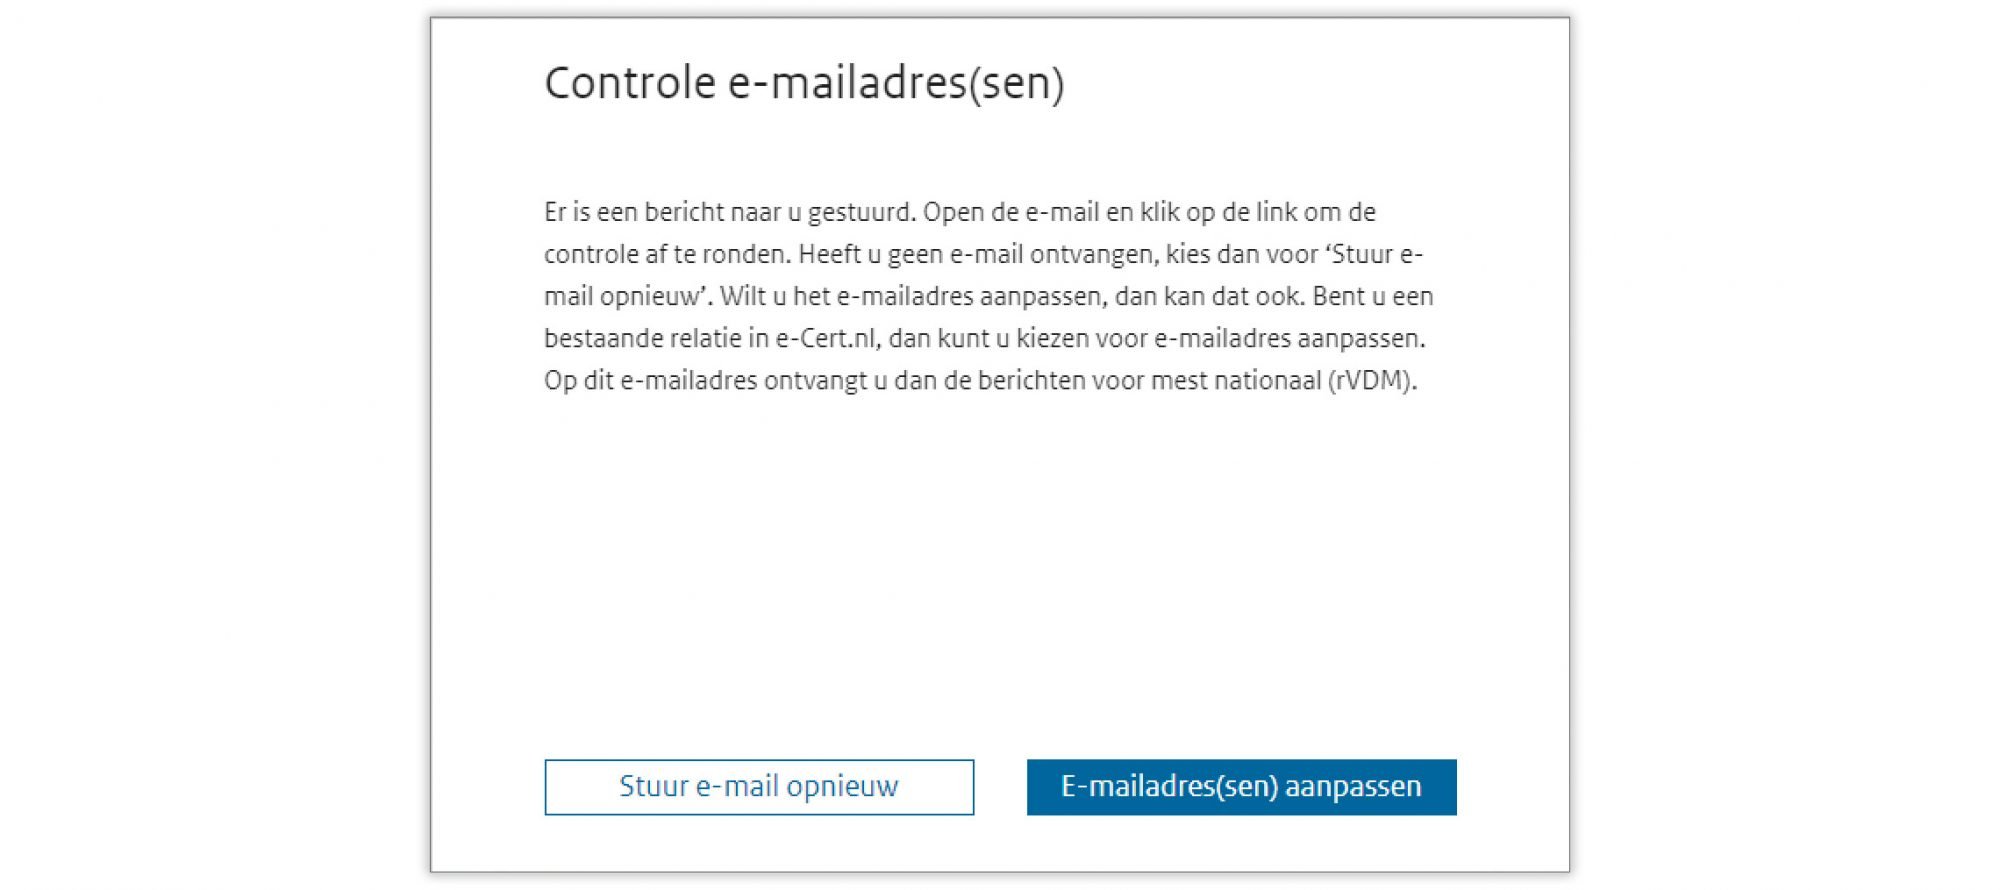 Schermvoorbeeld ter bevestiging dat een controle e-mail is verstuurd.